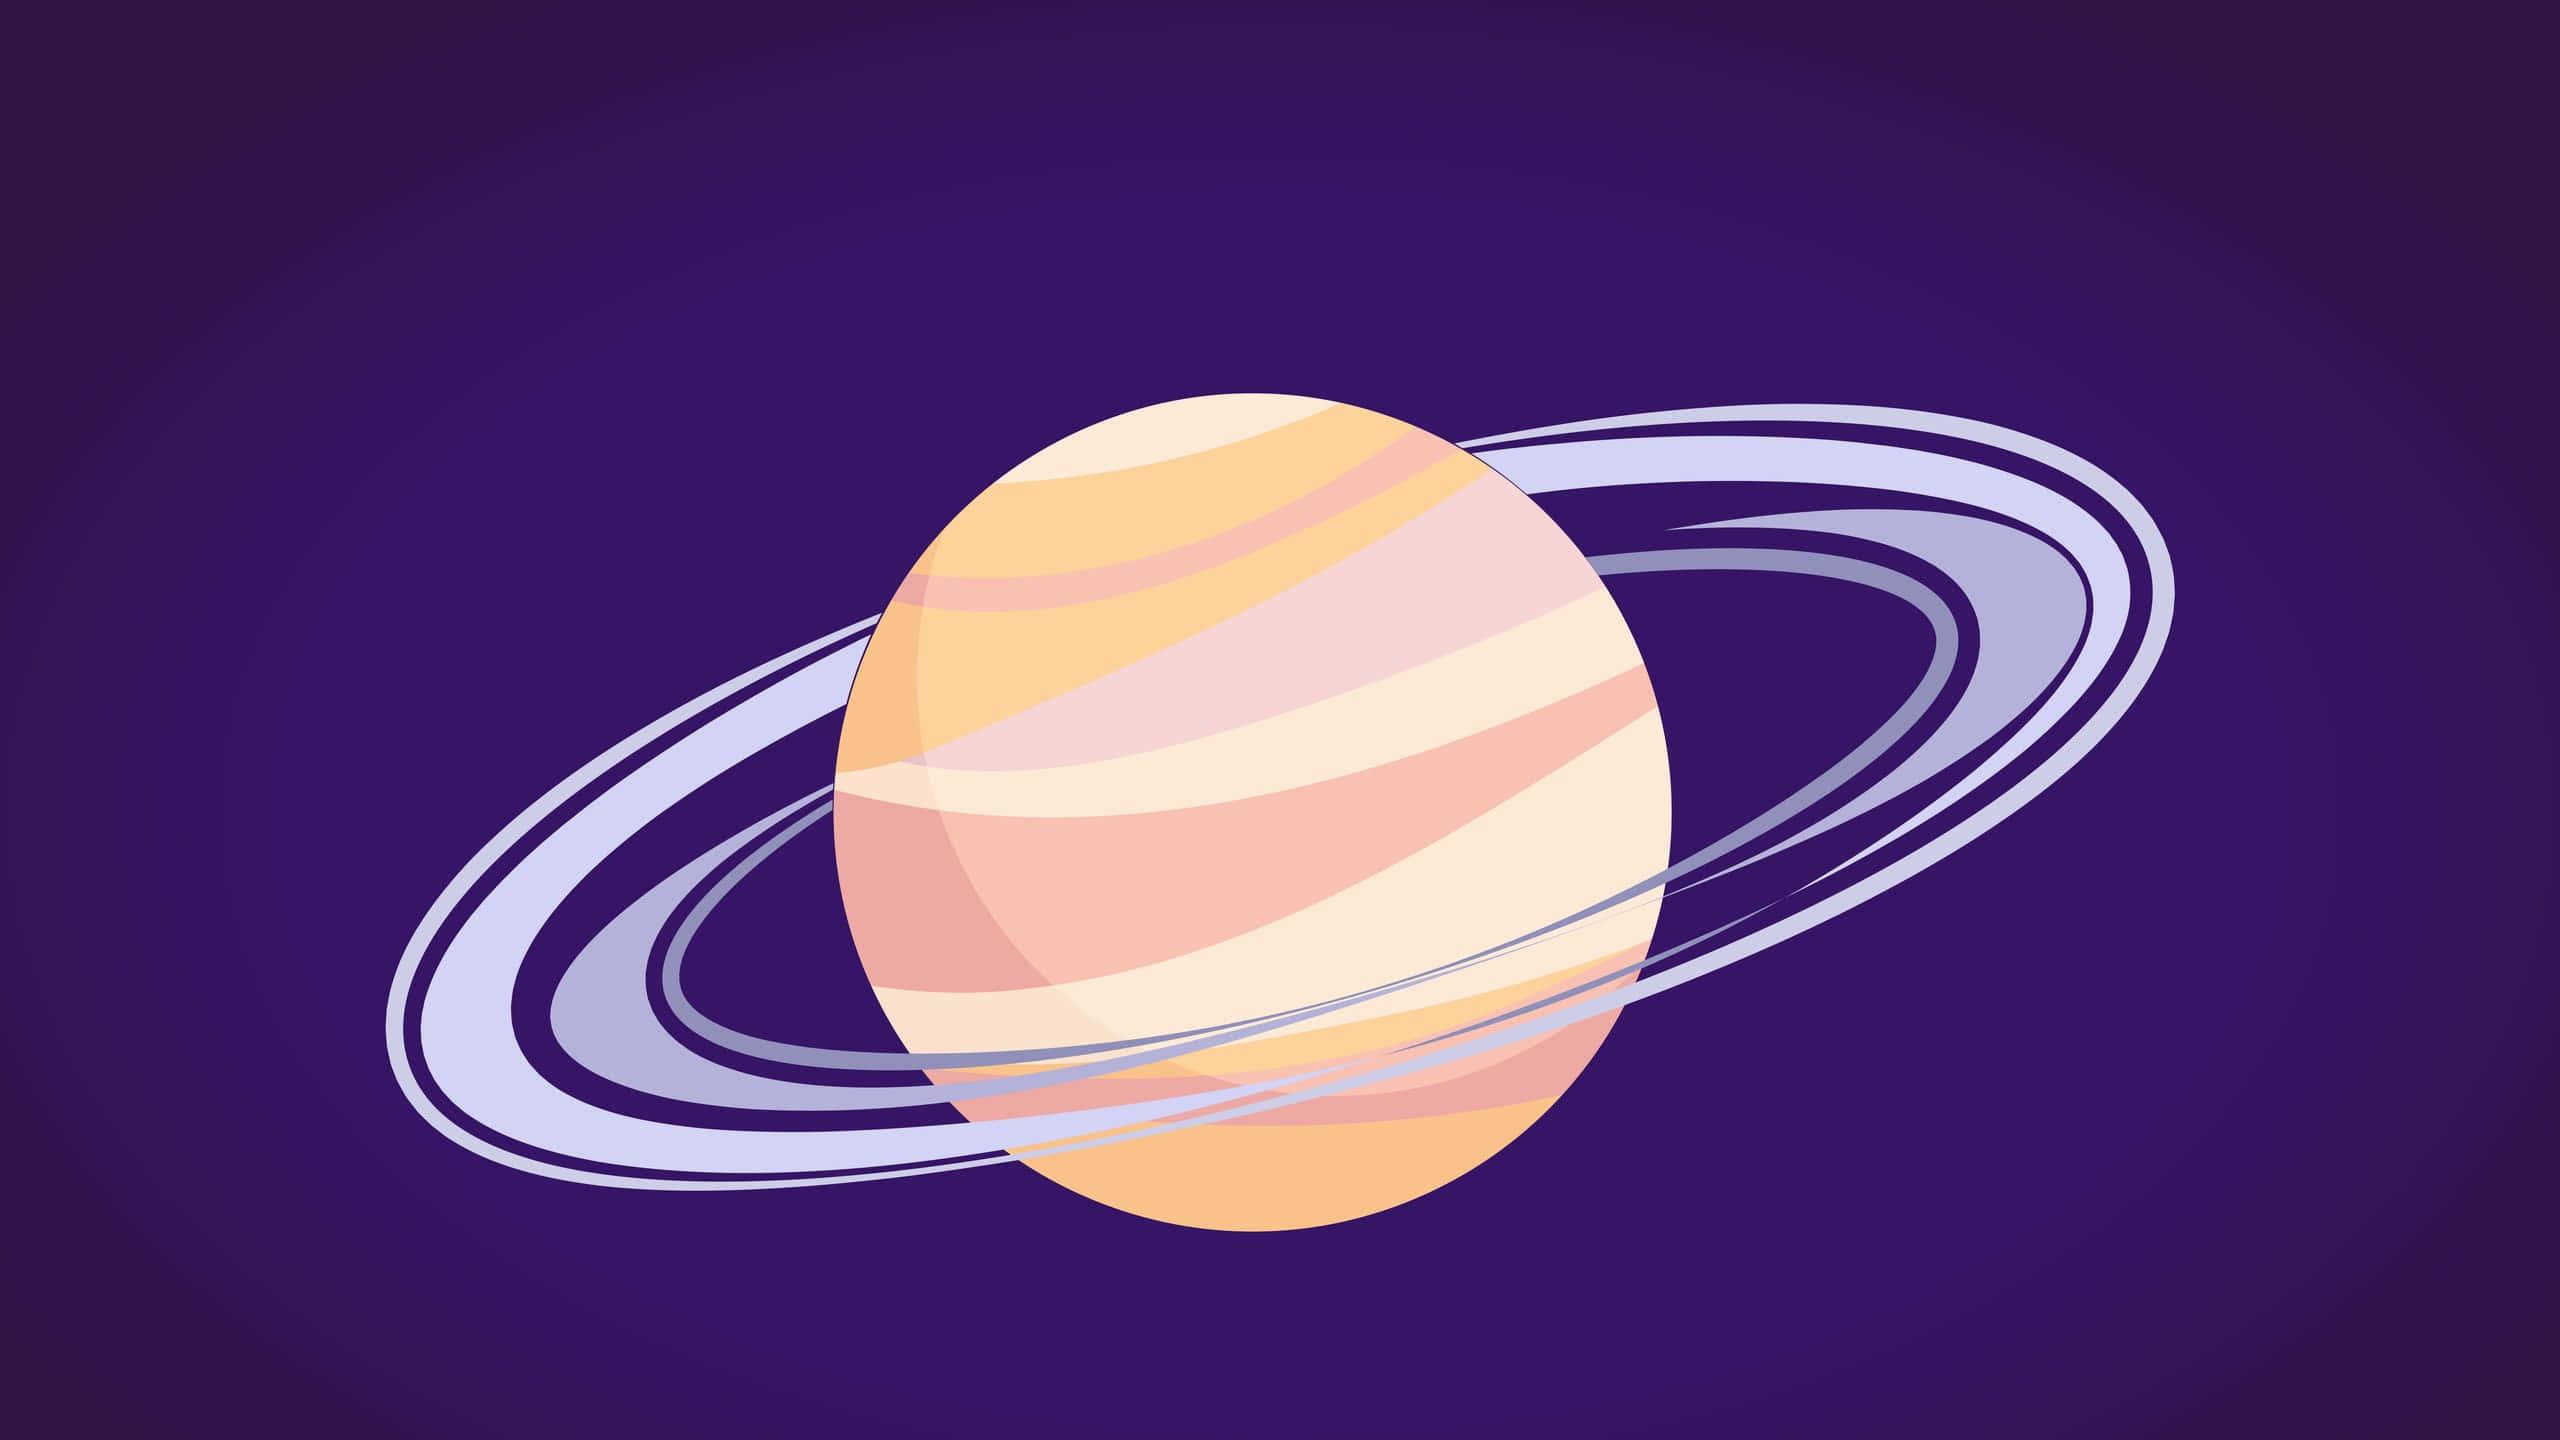 Saturnsfantastiska Lager Av Synliga Atmosfärer.